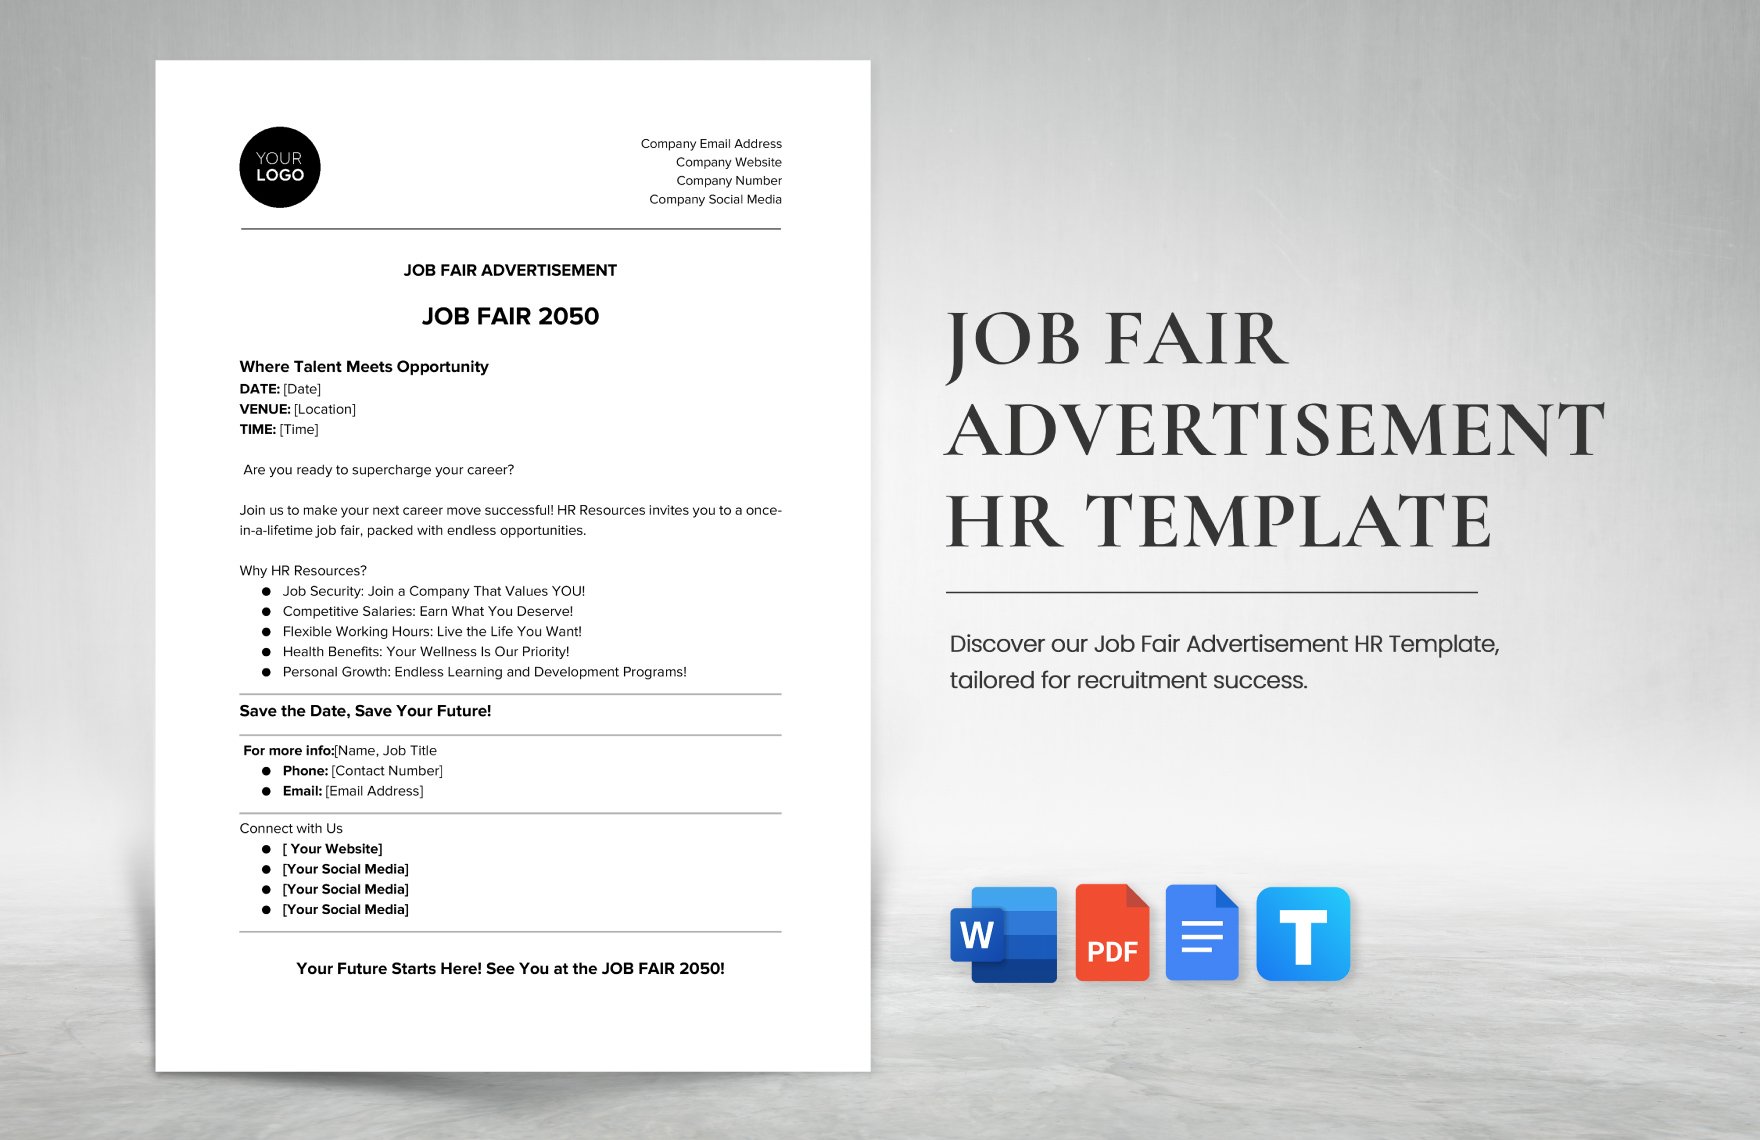 Job Fair Advertisement HR Template